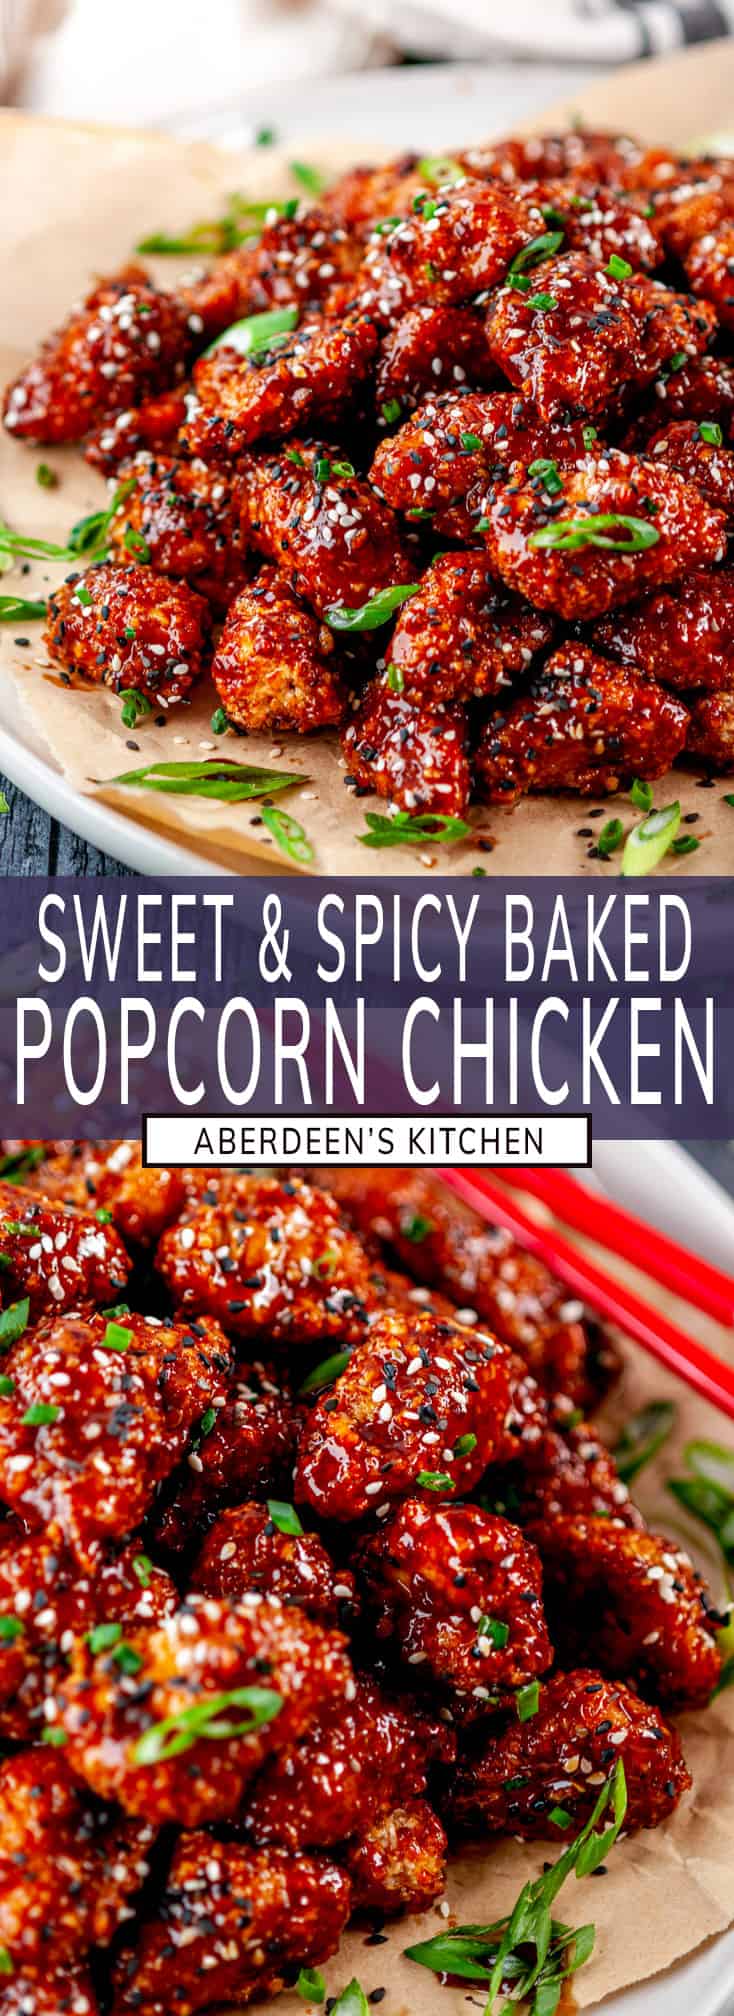 Sweet and Spicy Baked Popcorn Chicken - Aberdeen's Kitchen